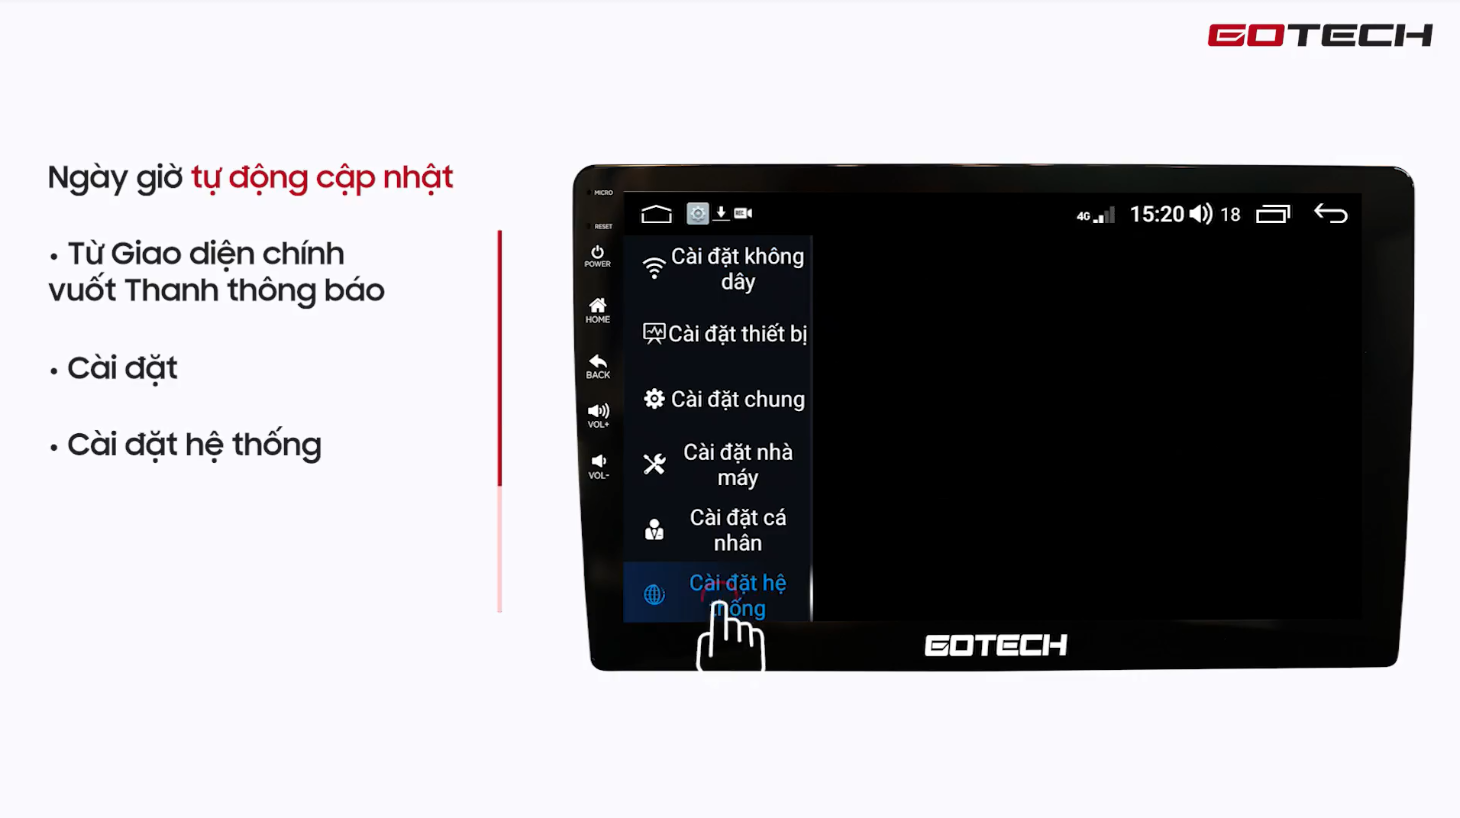 Hướng dẫn cài đặt cơ bản trên màn hình Gotech